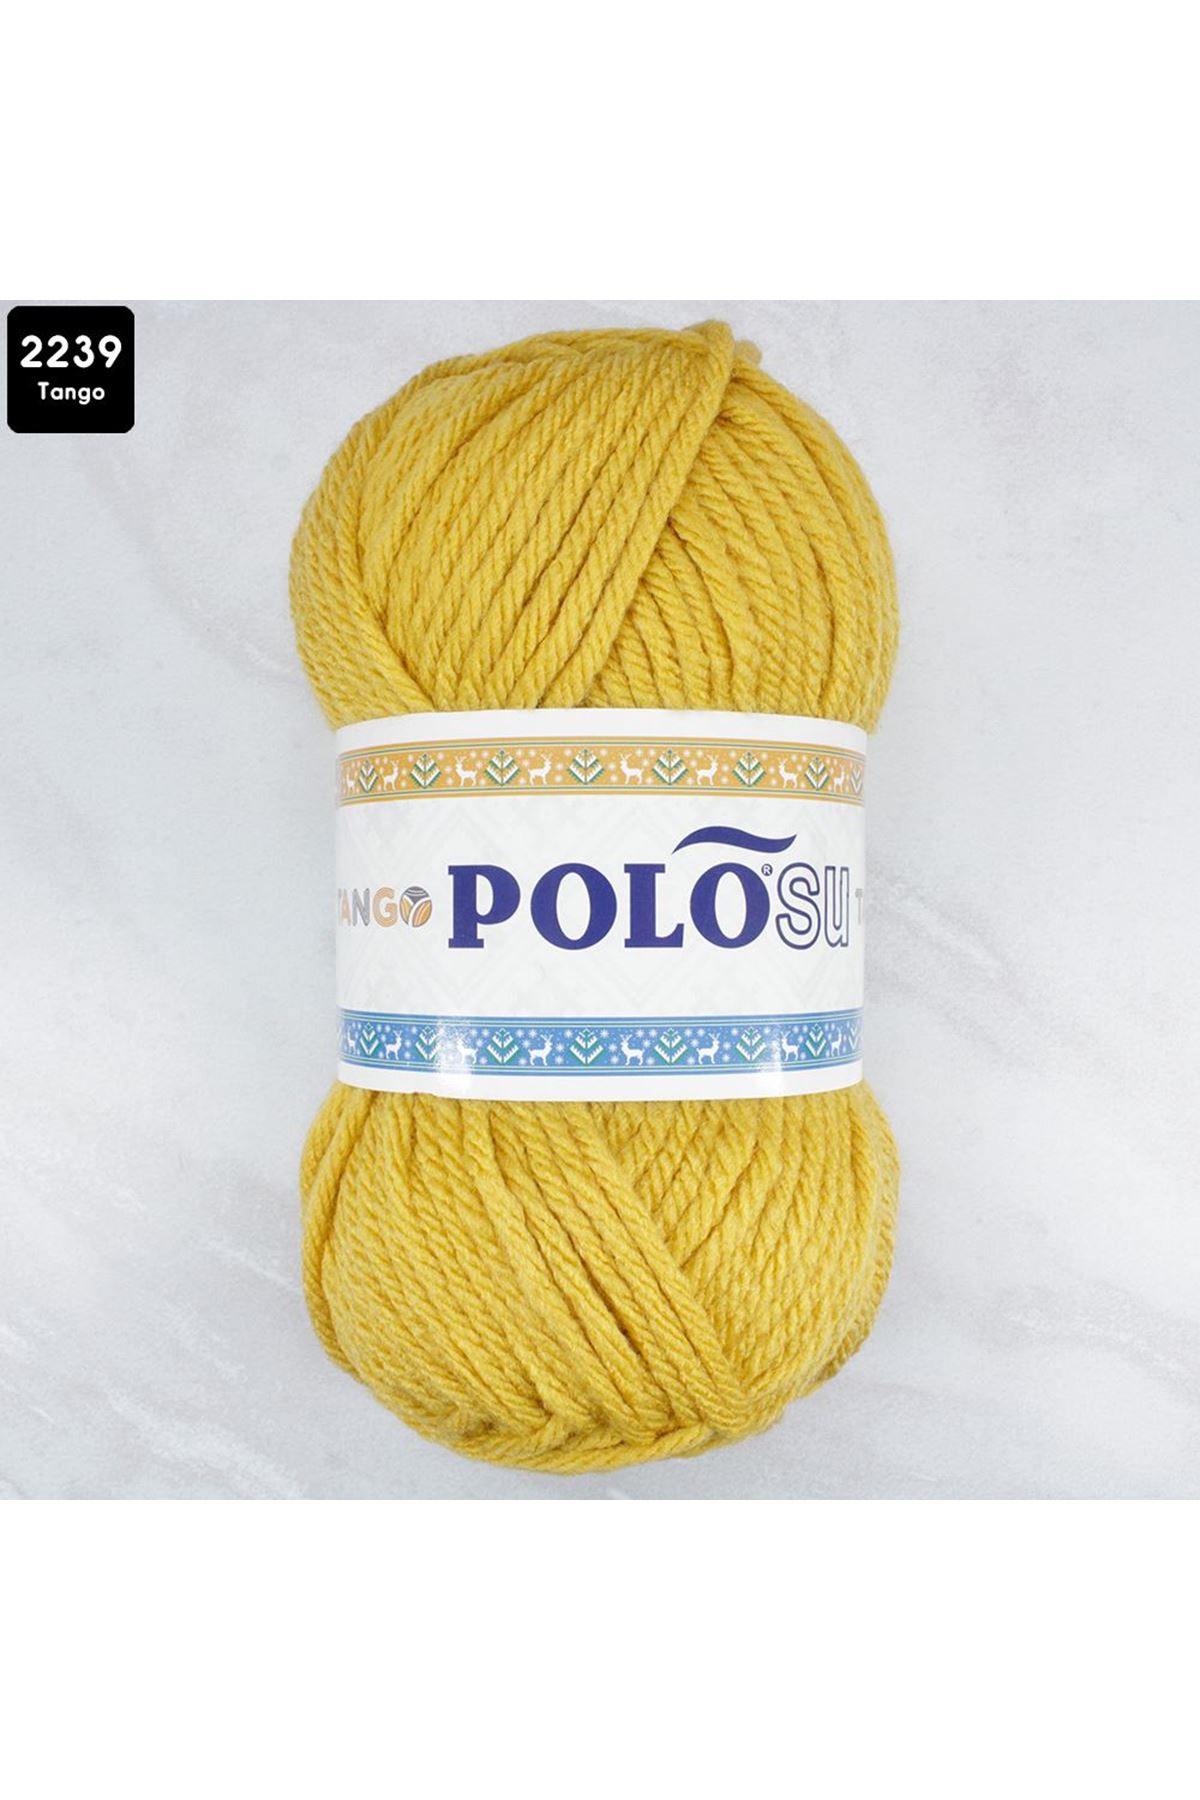 PoloSU Tango Renk No: 2239